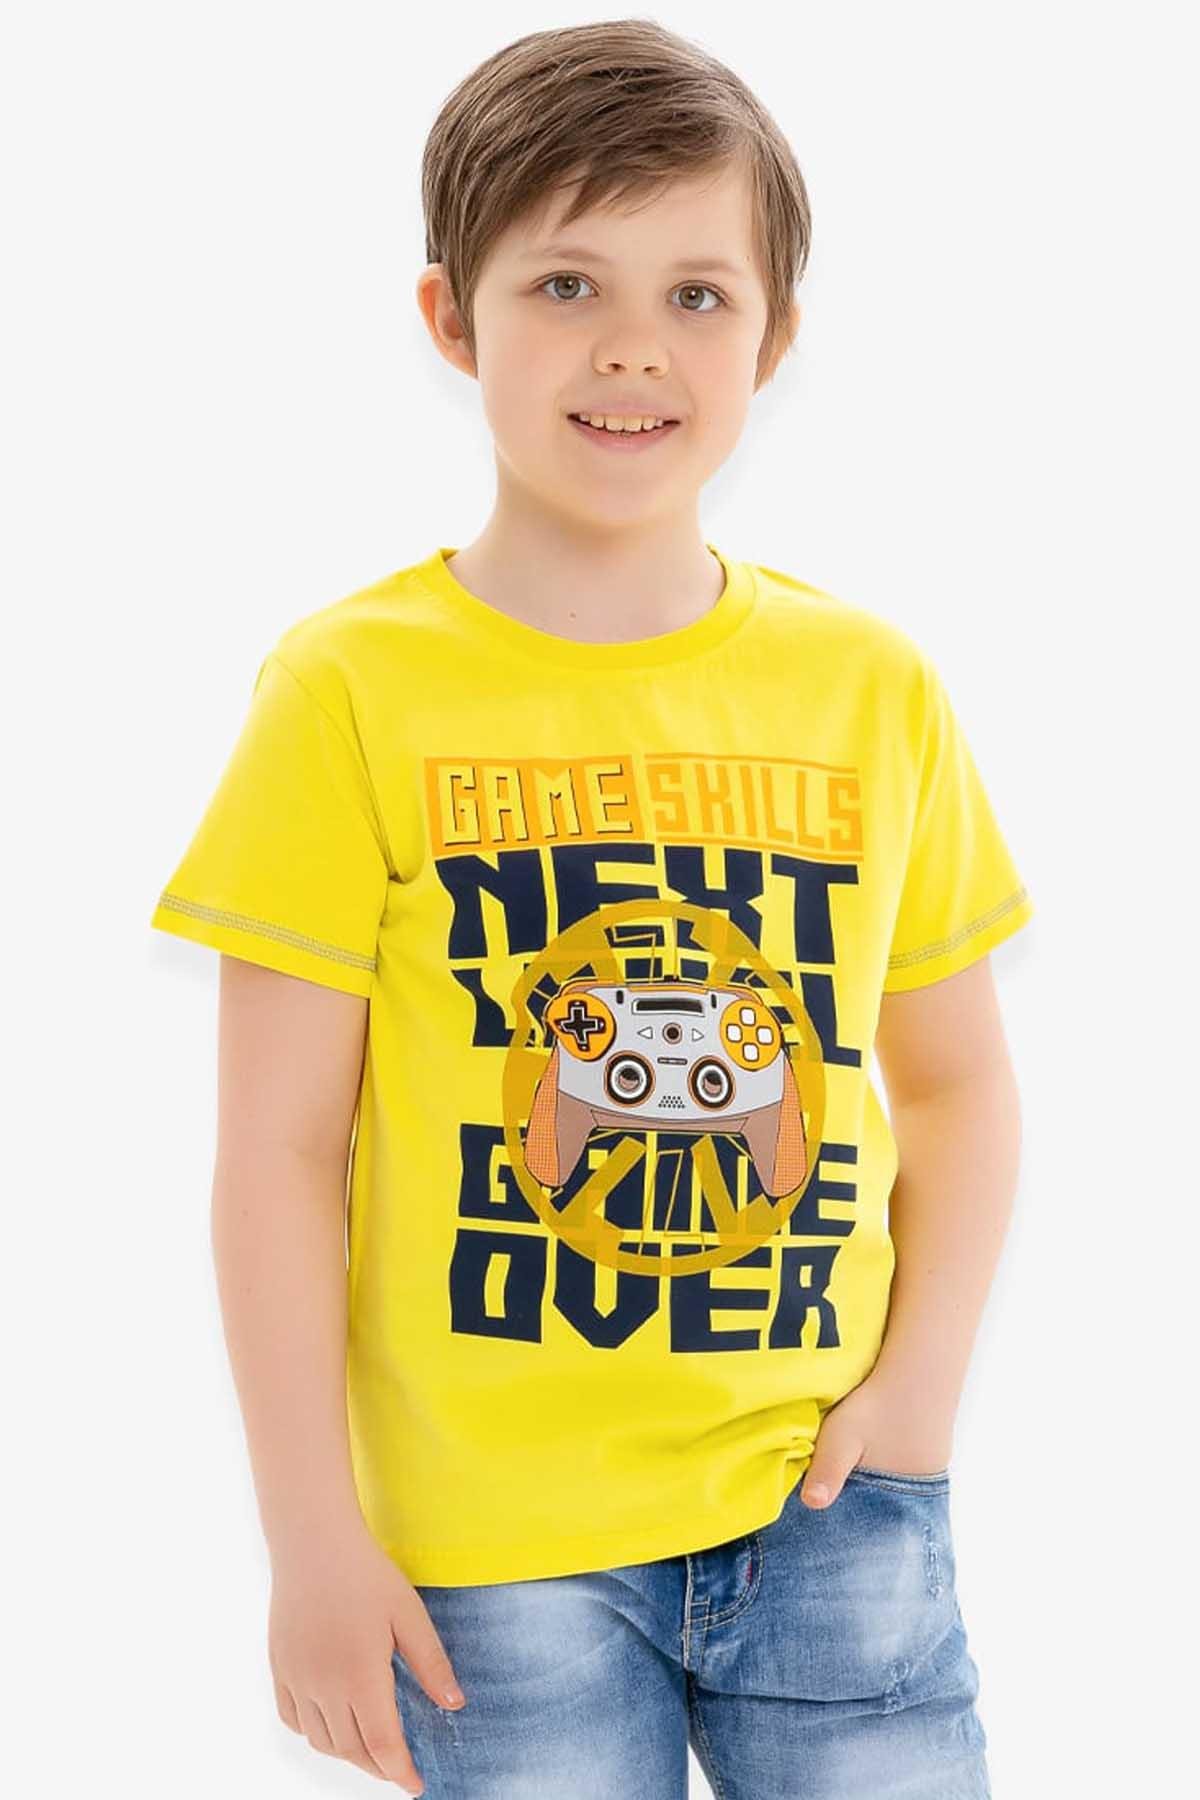 Erkek Çocuk Tişört Oyun Temalı Sarı 6-12 Yaş - Yazlık Tişört Modelleri |  Breeze